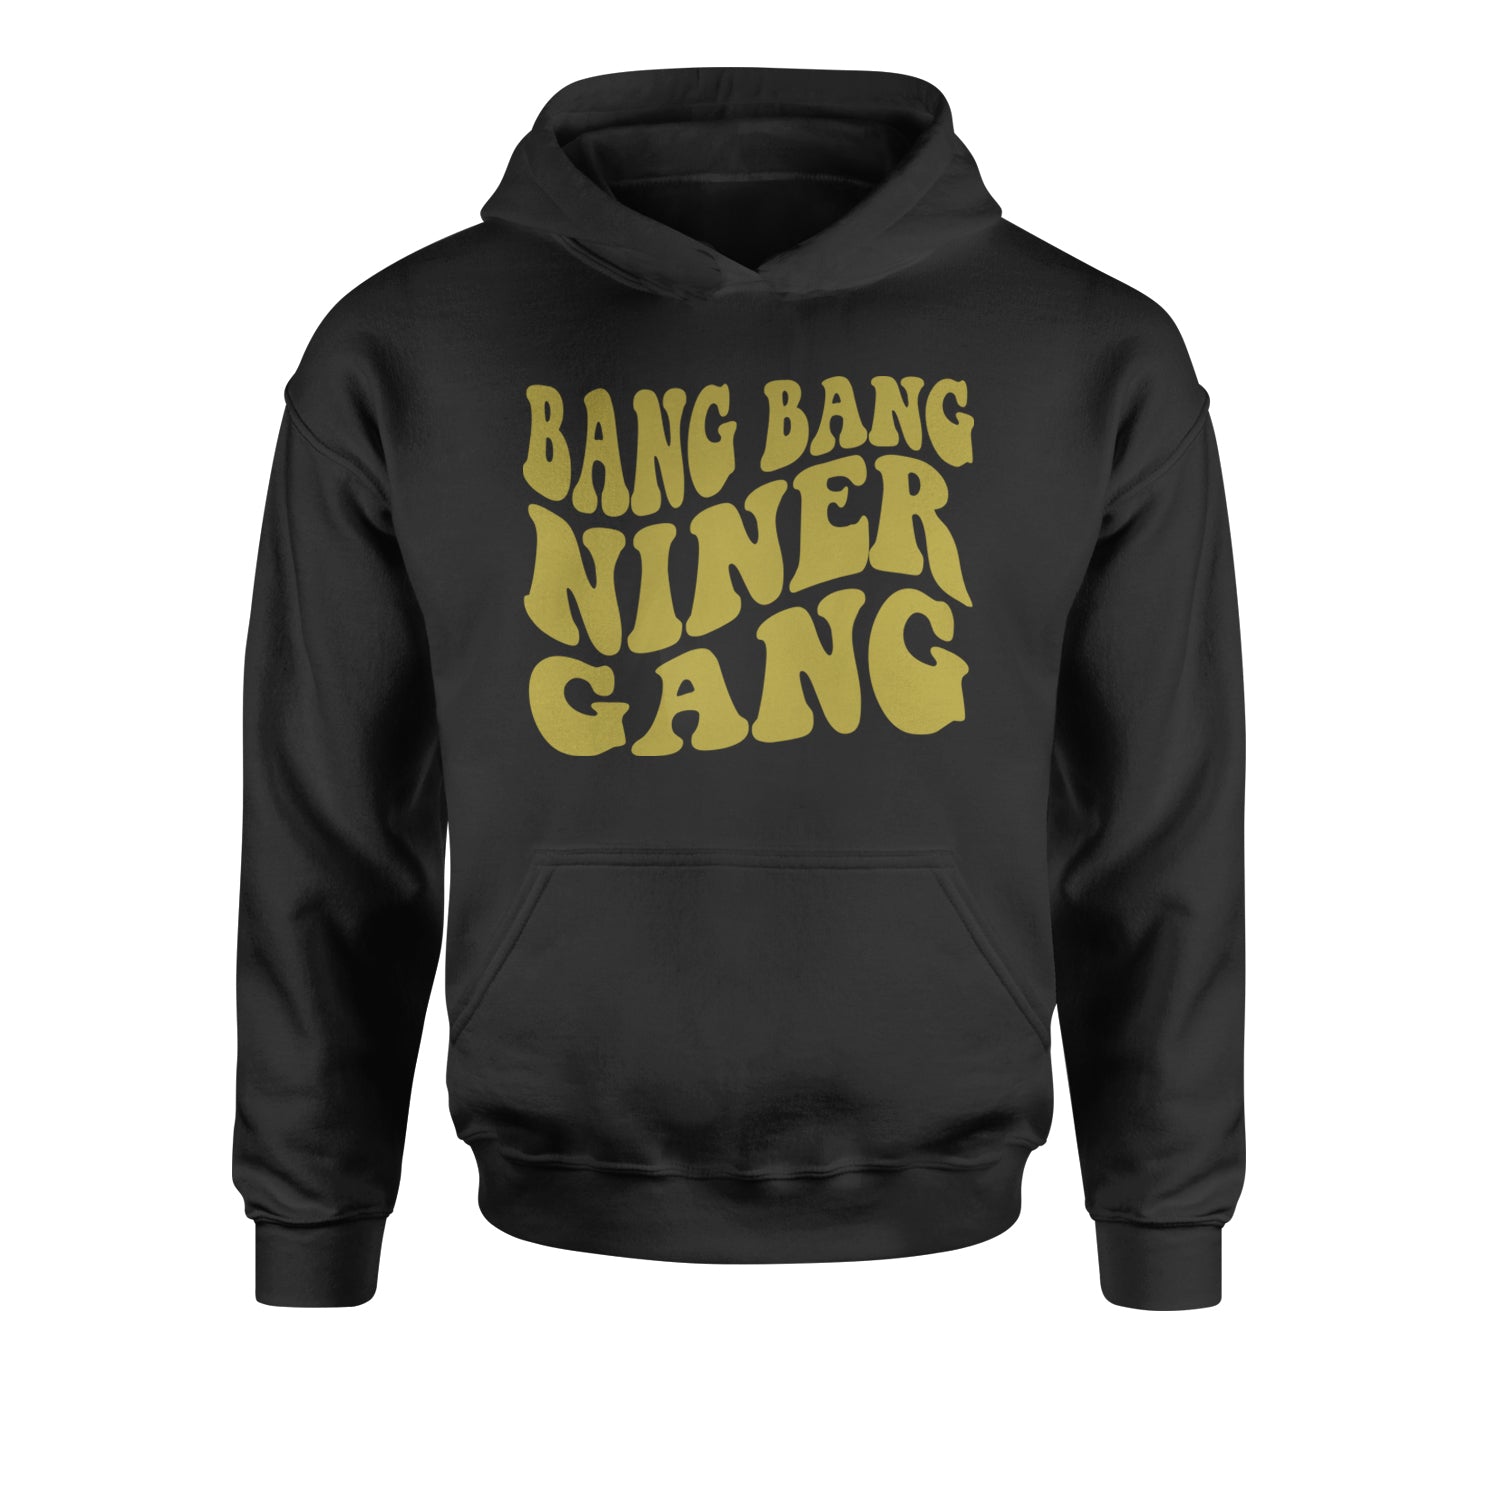 WAVE Bang Bang Niner Gang San Francisco Youth-Sized Hoodie